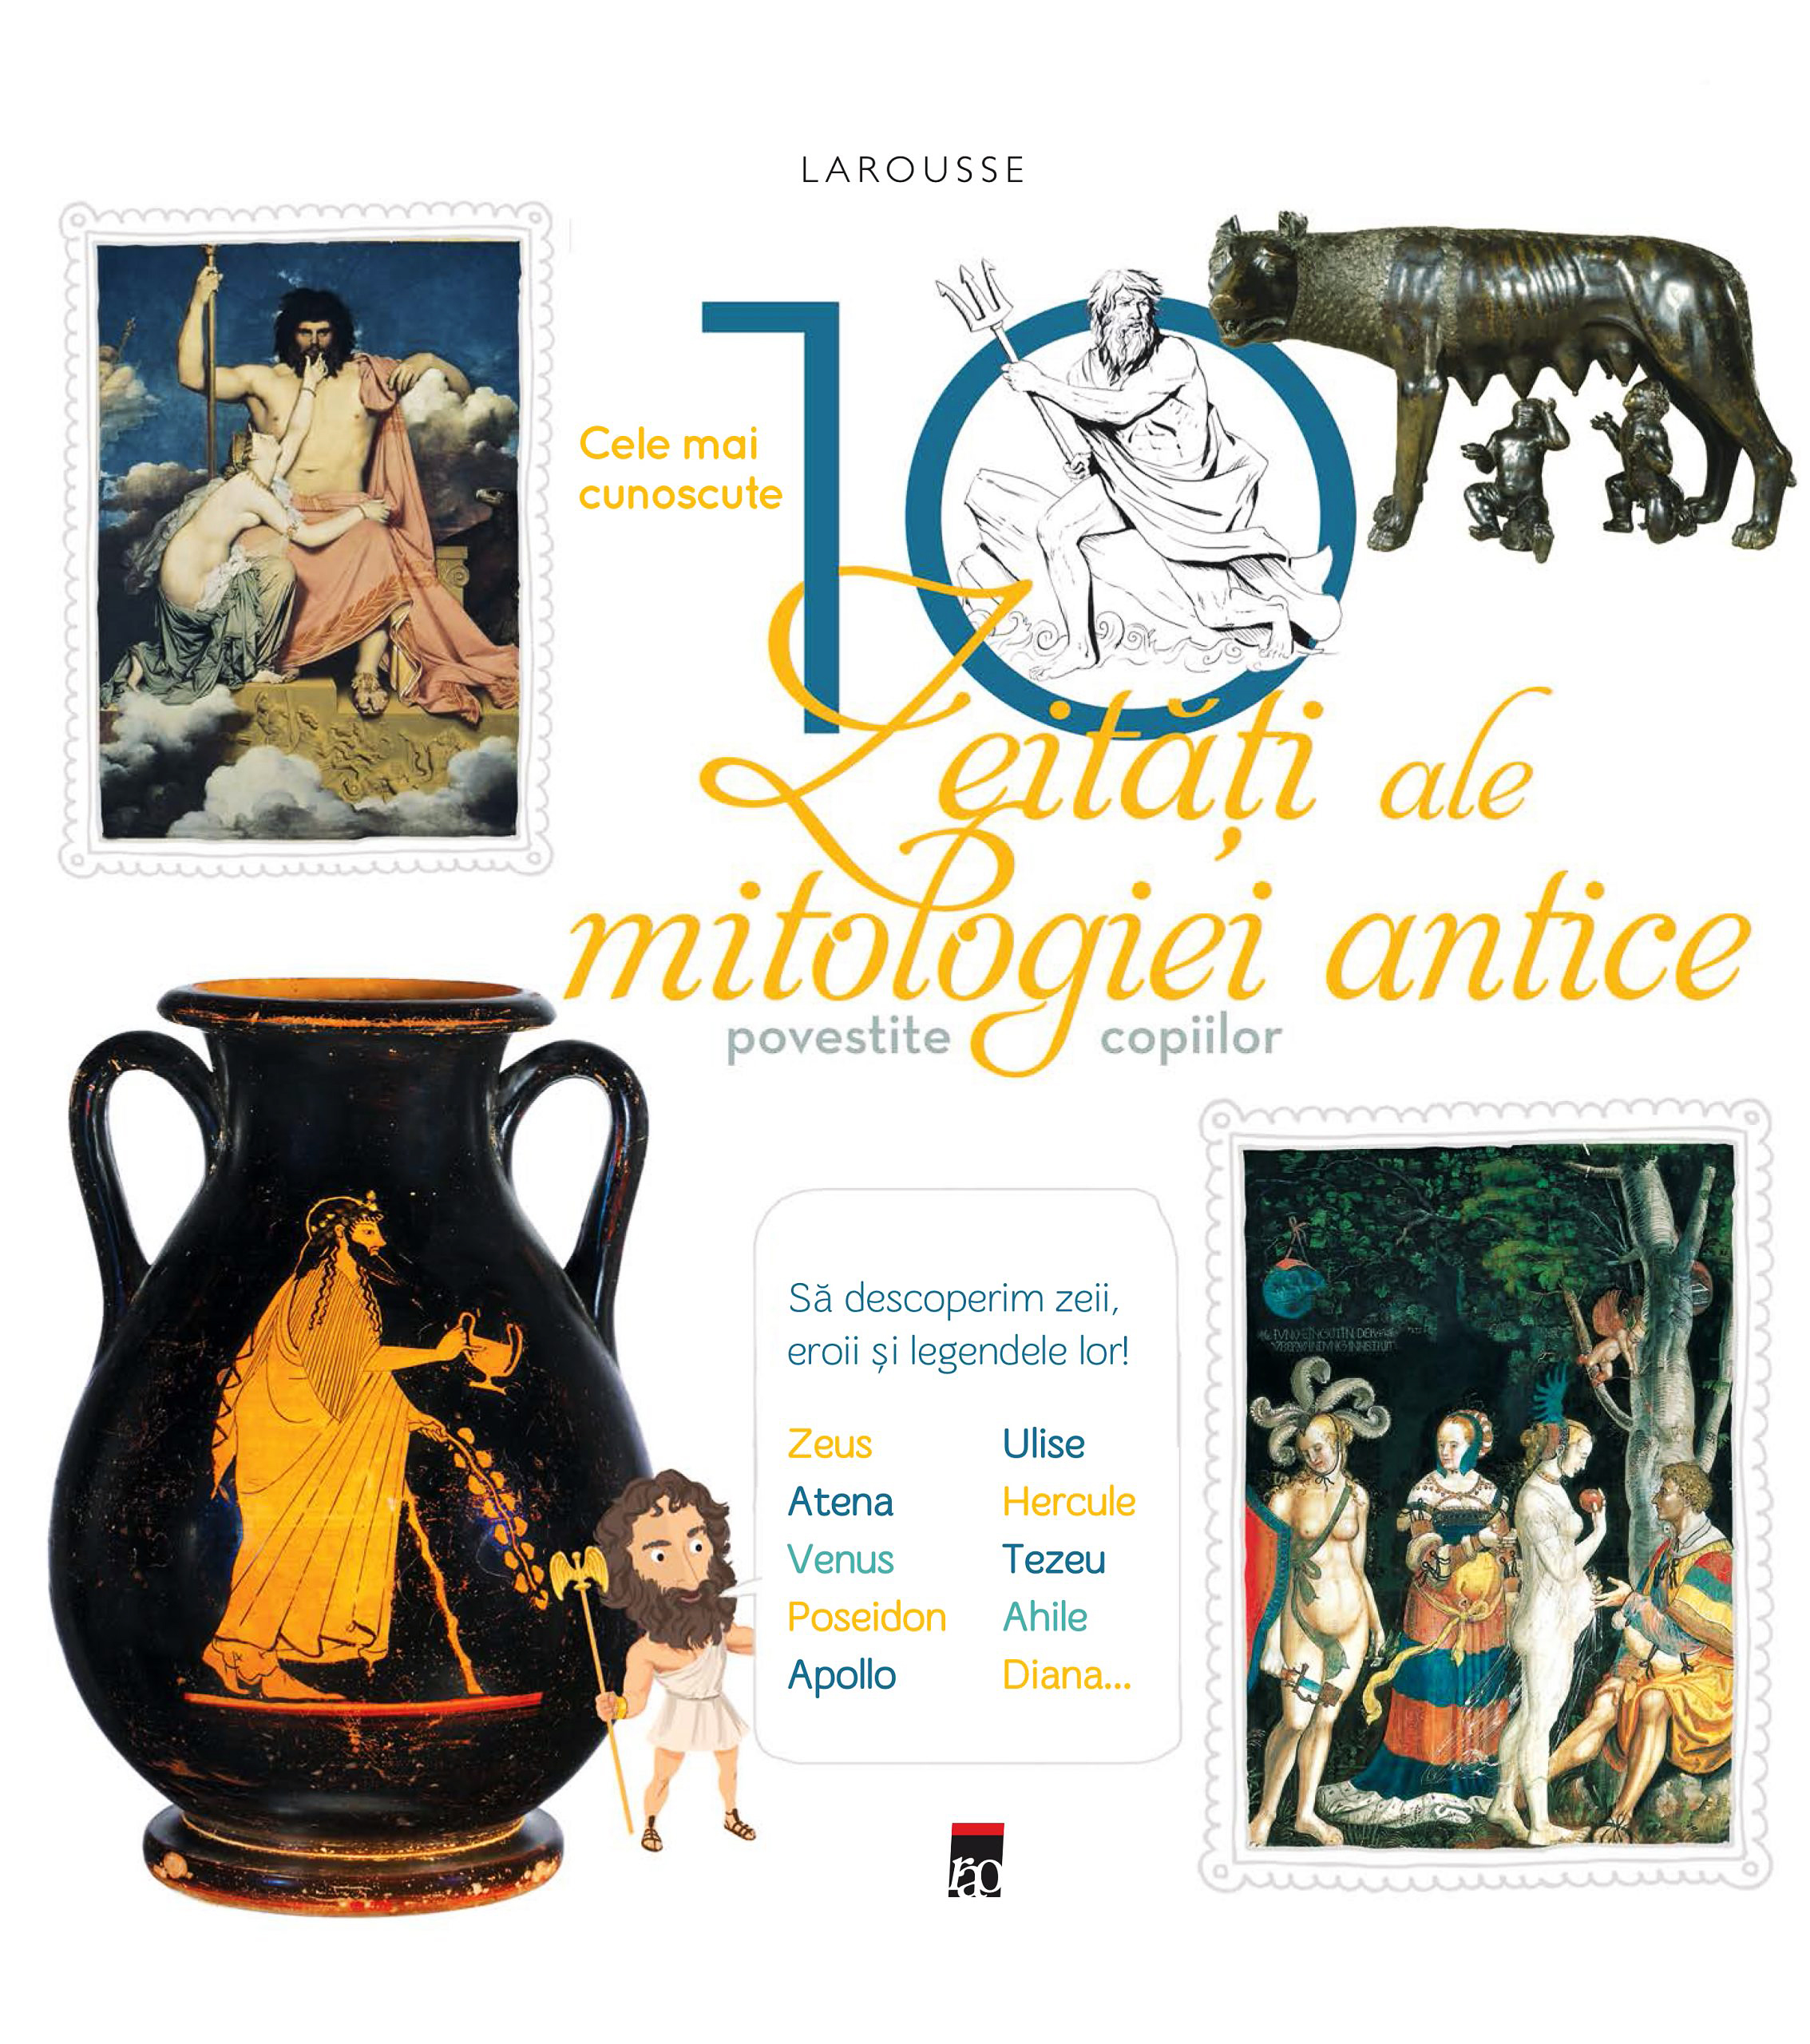 Larousse. Cele mai cunoscute 10 zeitati ale mitologiei antice povestite copiilor | ale